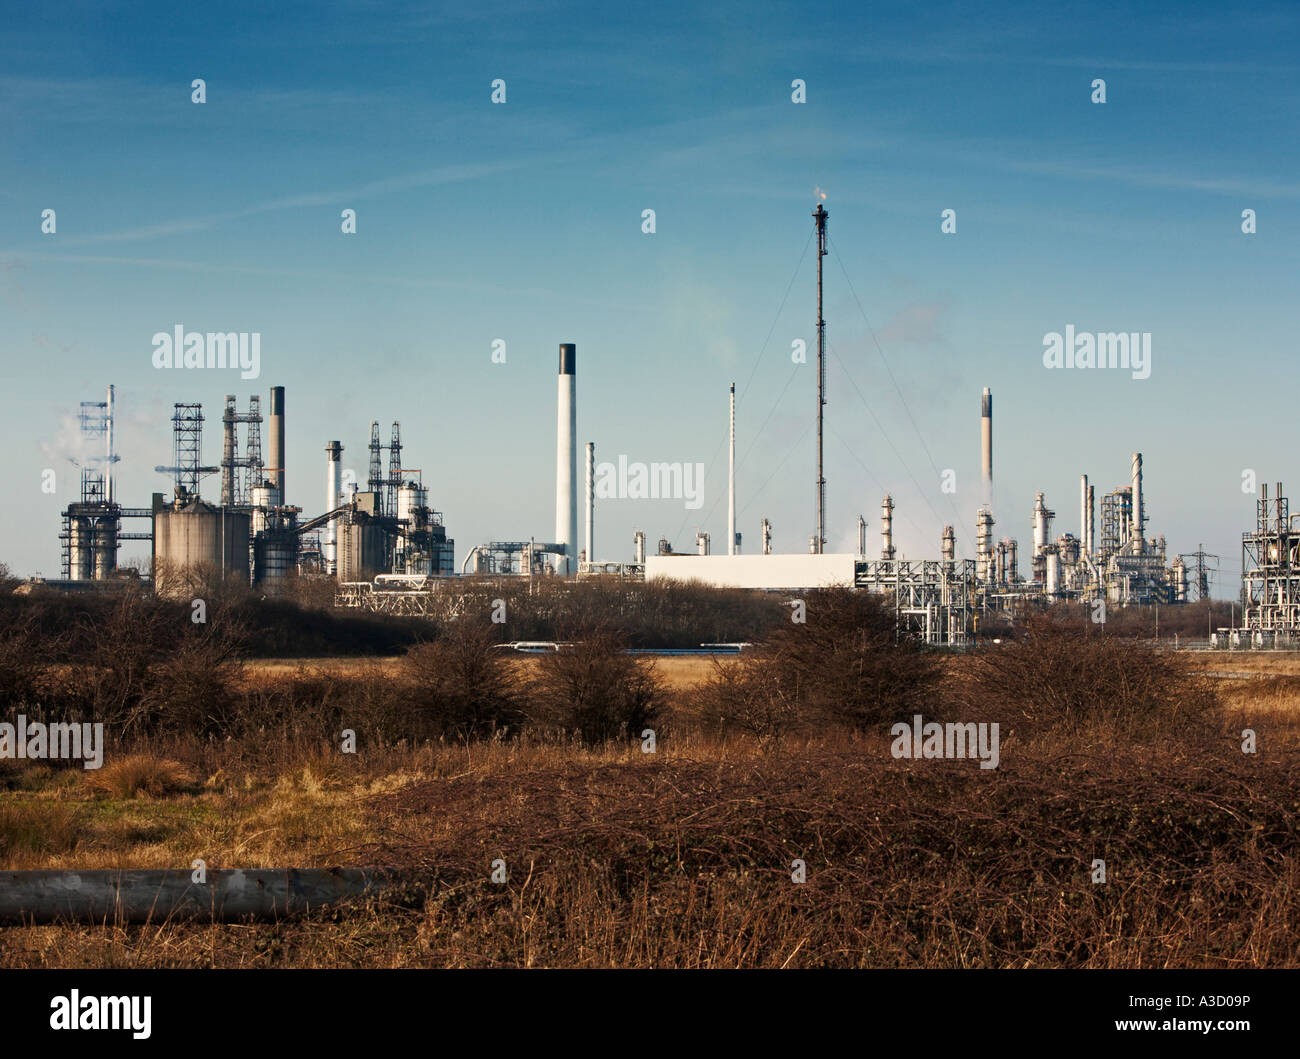 Conoco Phillips raffineria di petrolio a sud Killingholme, Immingham, Lincolnshire, England, Regno Unito Foto Stock